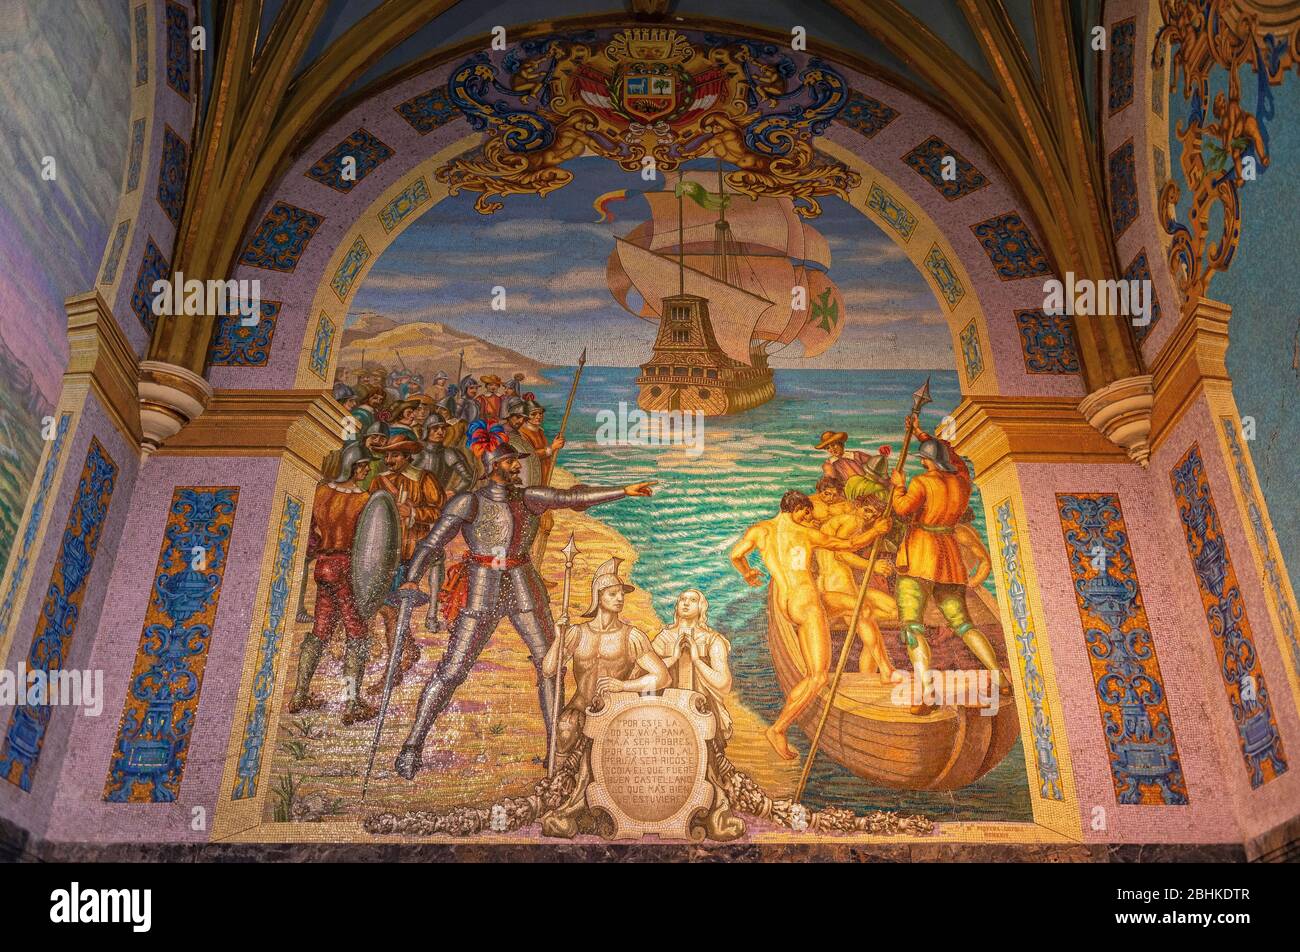 Mosaico piastrelle decorazione nella cappella della tomba di Francisco Pizarro, Conquistatore dell'Impero Inca, nella Cattedrale Metropolitana di Lima, Perù. Foto Stock